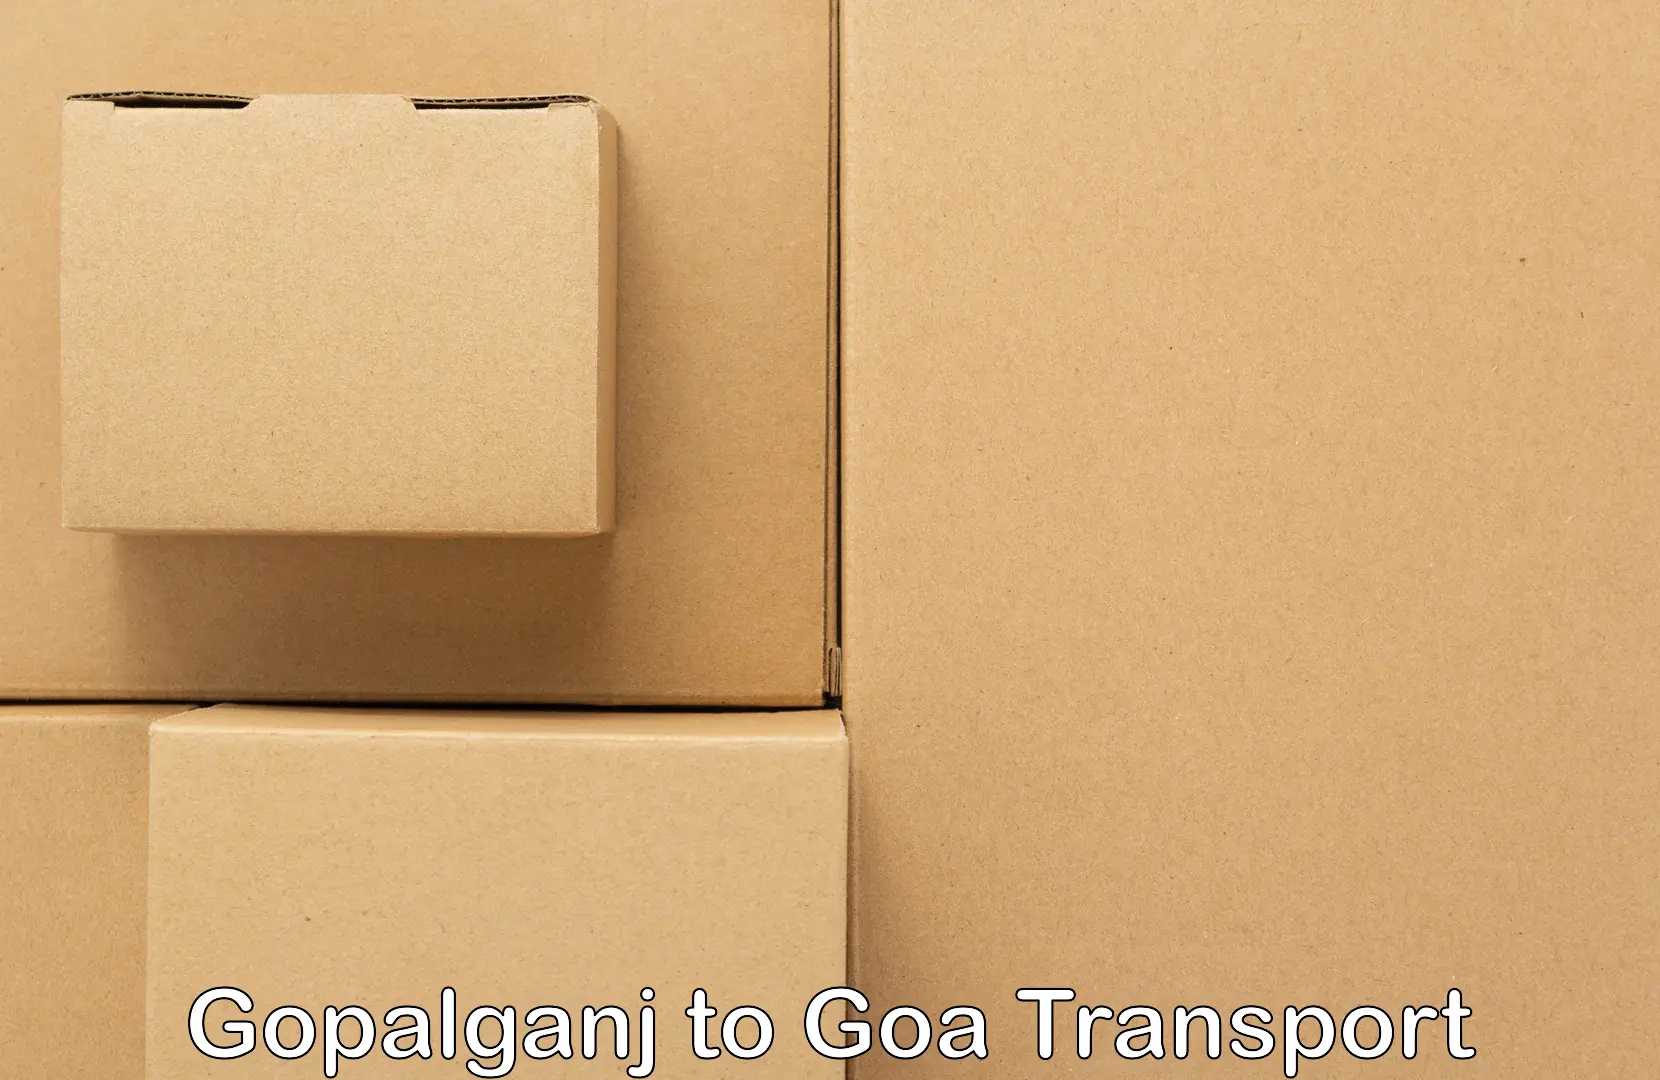 Nearby transport service Gopalganj to Goa